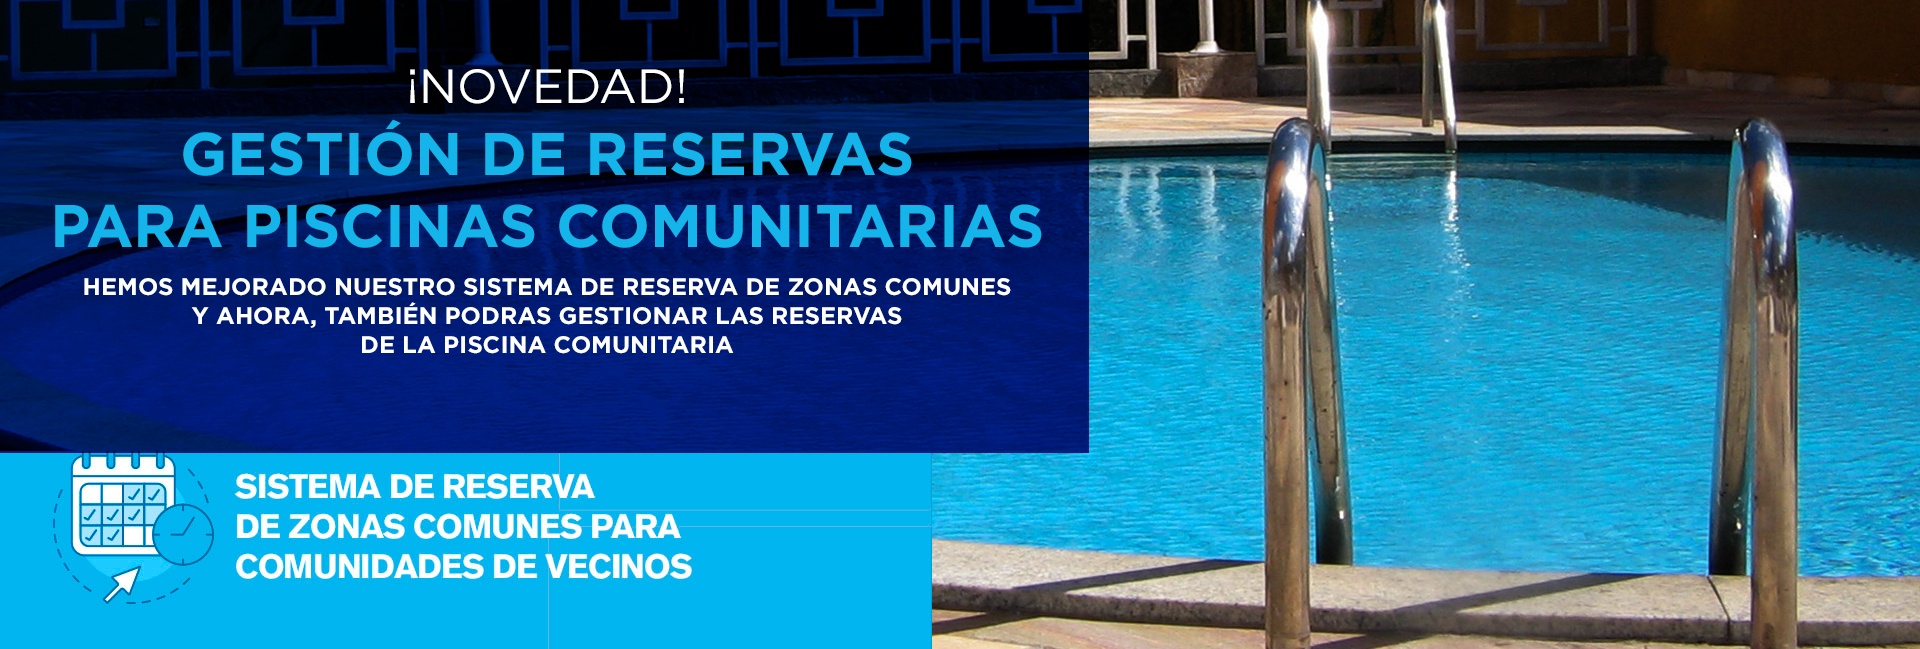 Reserva de Zonas Comunes para las piscinas comunitarias COVID19